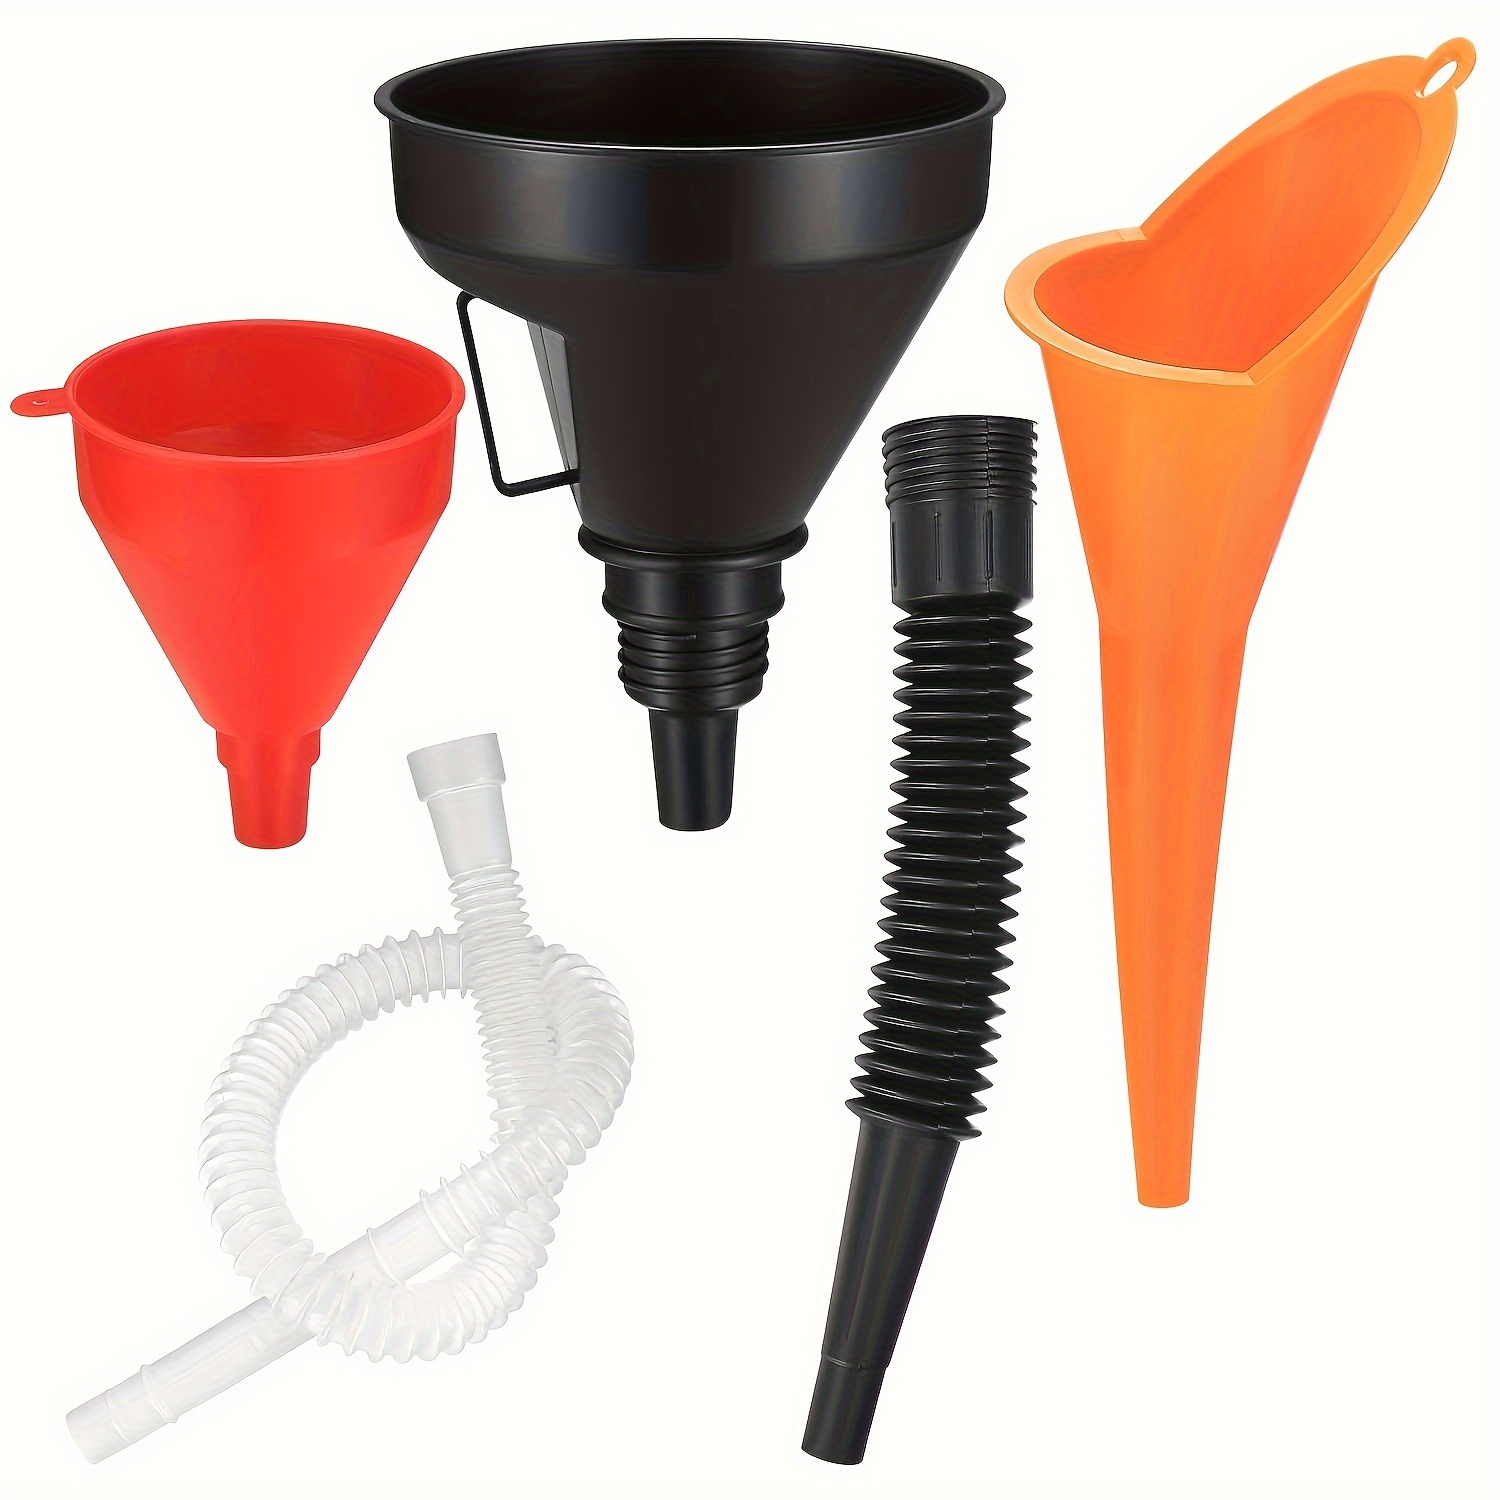 

5pcs Automotive Funnels Set, Wide Mouth Fuel Funnels, Plastic Long Neck Oil Funnels, Flexible Right Angle Funnels, With Detachable Spout